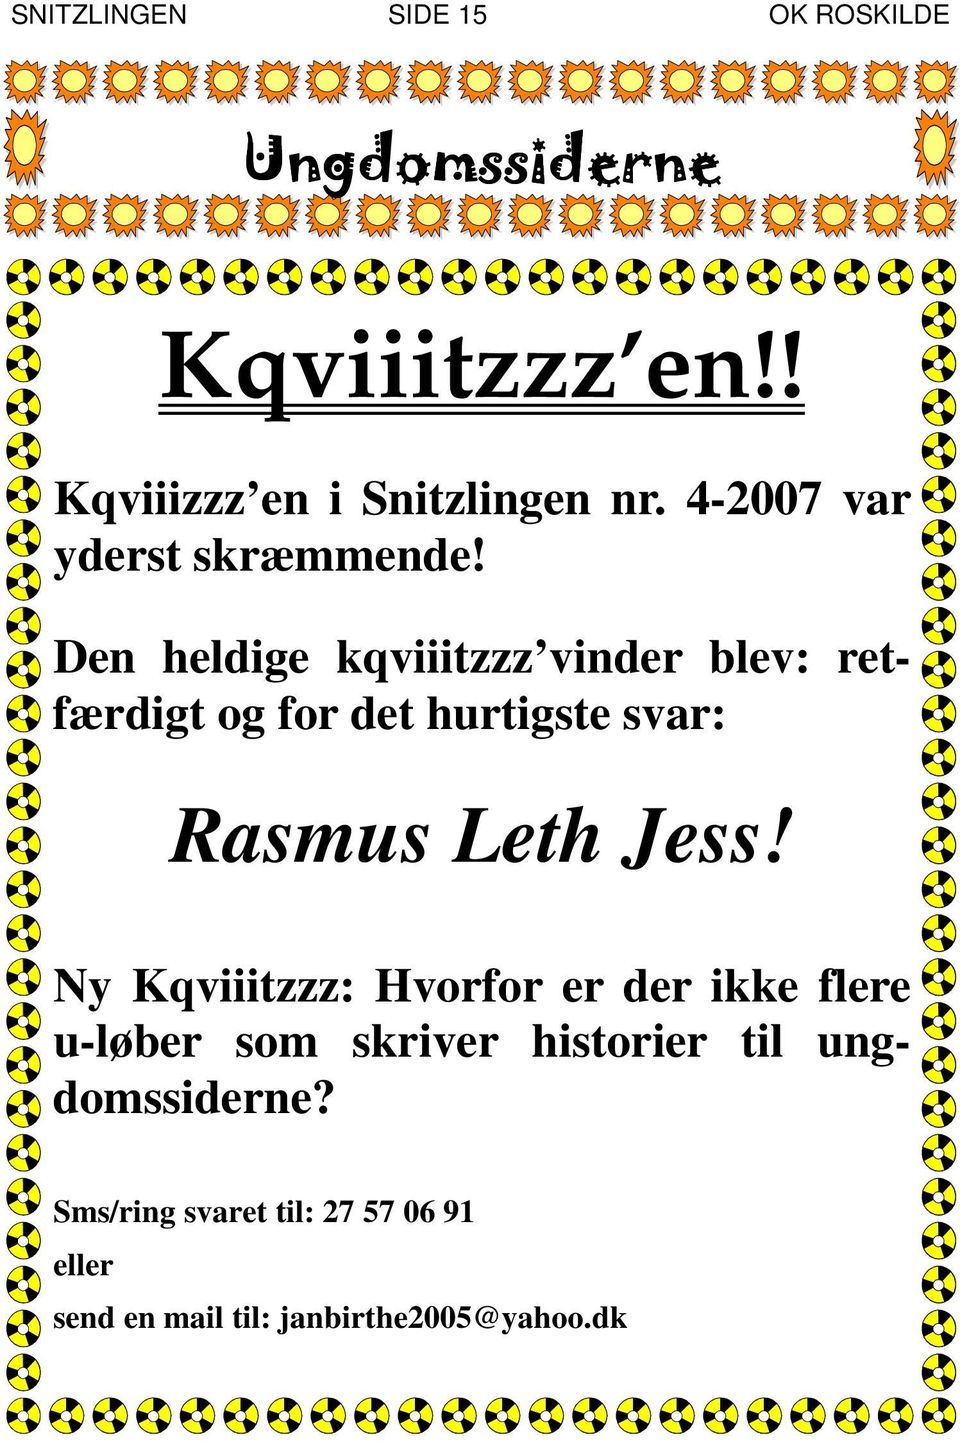 Den heldige kqviiitzzz vinder blev: retfærdigt og for det hurtigste svar: Rasmus Leth Jess!